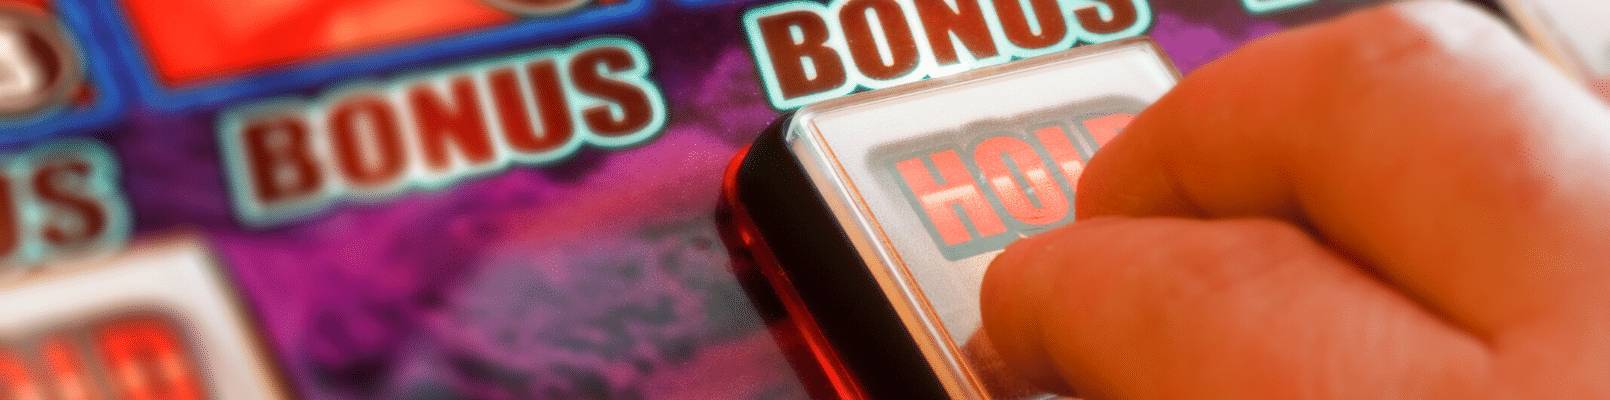 Cazinou Mobil La - Lista cazinourilor online cu bonusuri acum gratuite